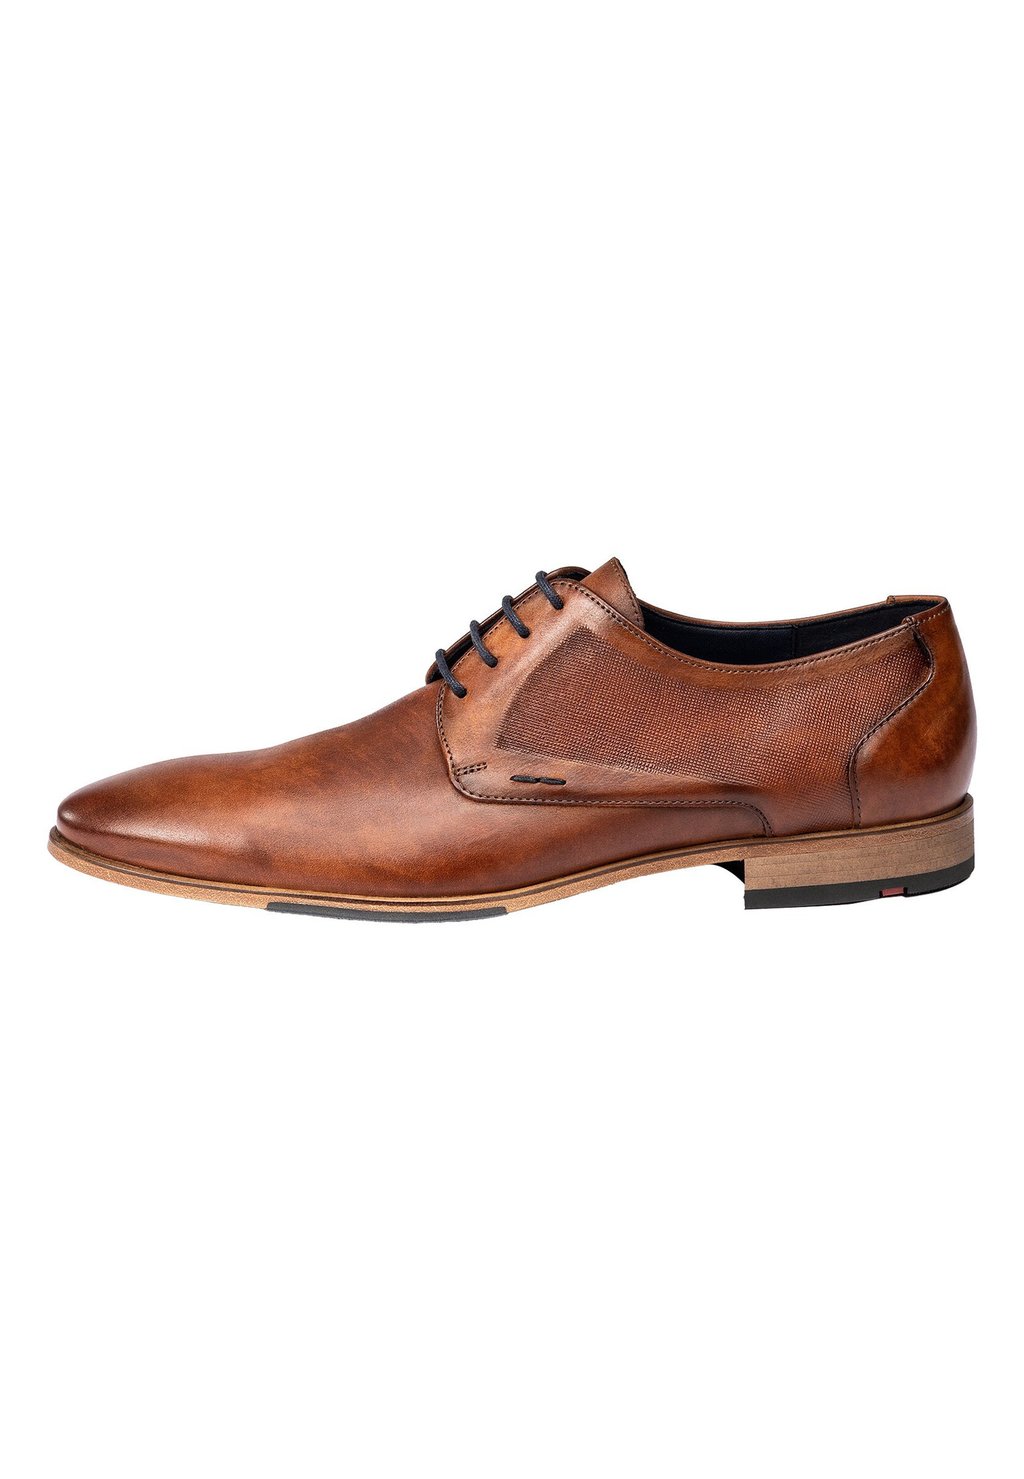 Элегантные туфли на шнуровке Galant Lloyd, коричневый